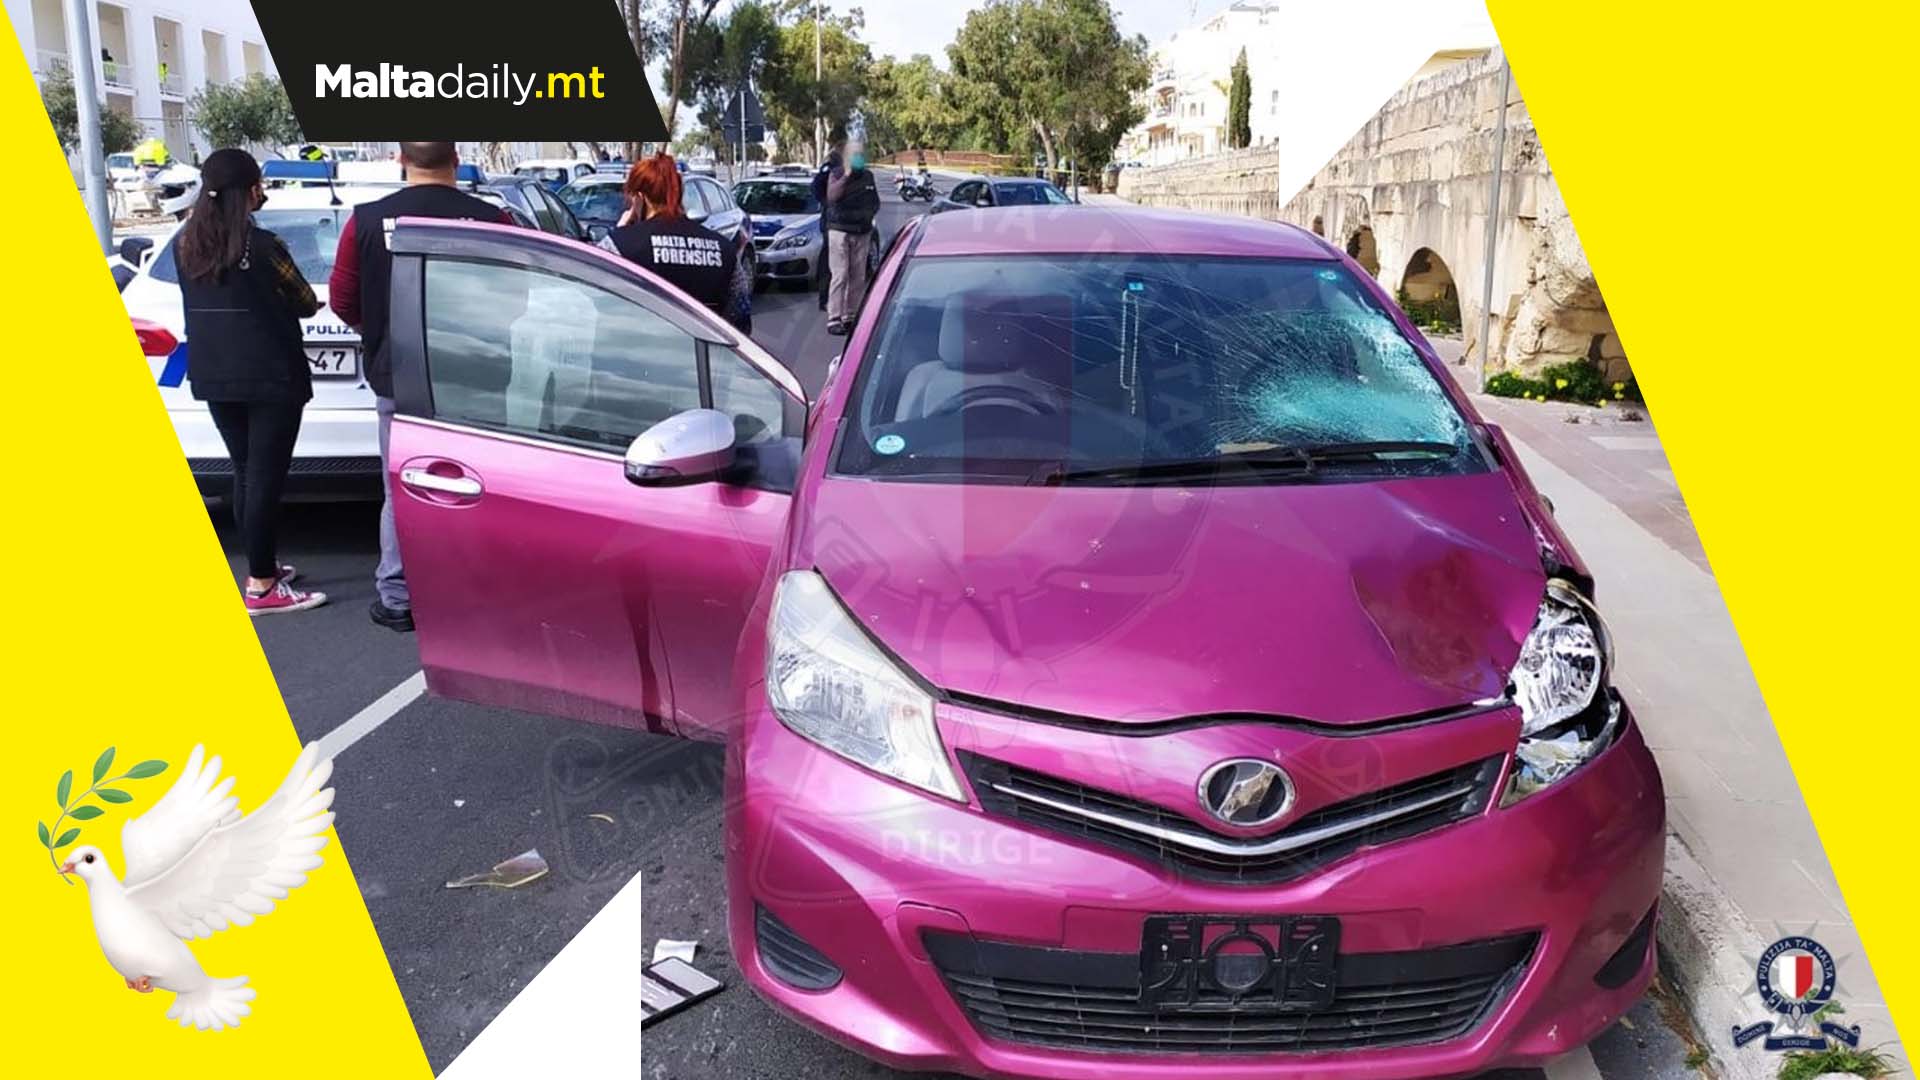 Man dies after tragic car accident in Birkirkara